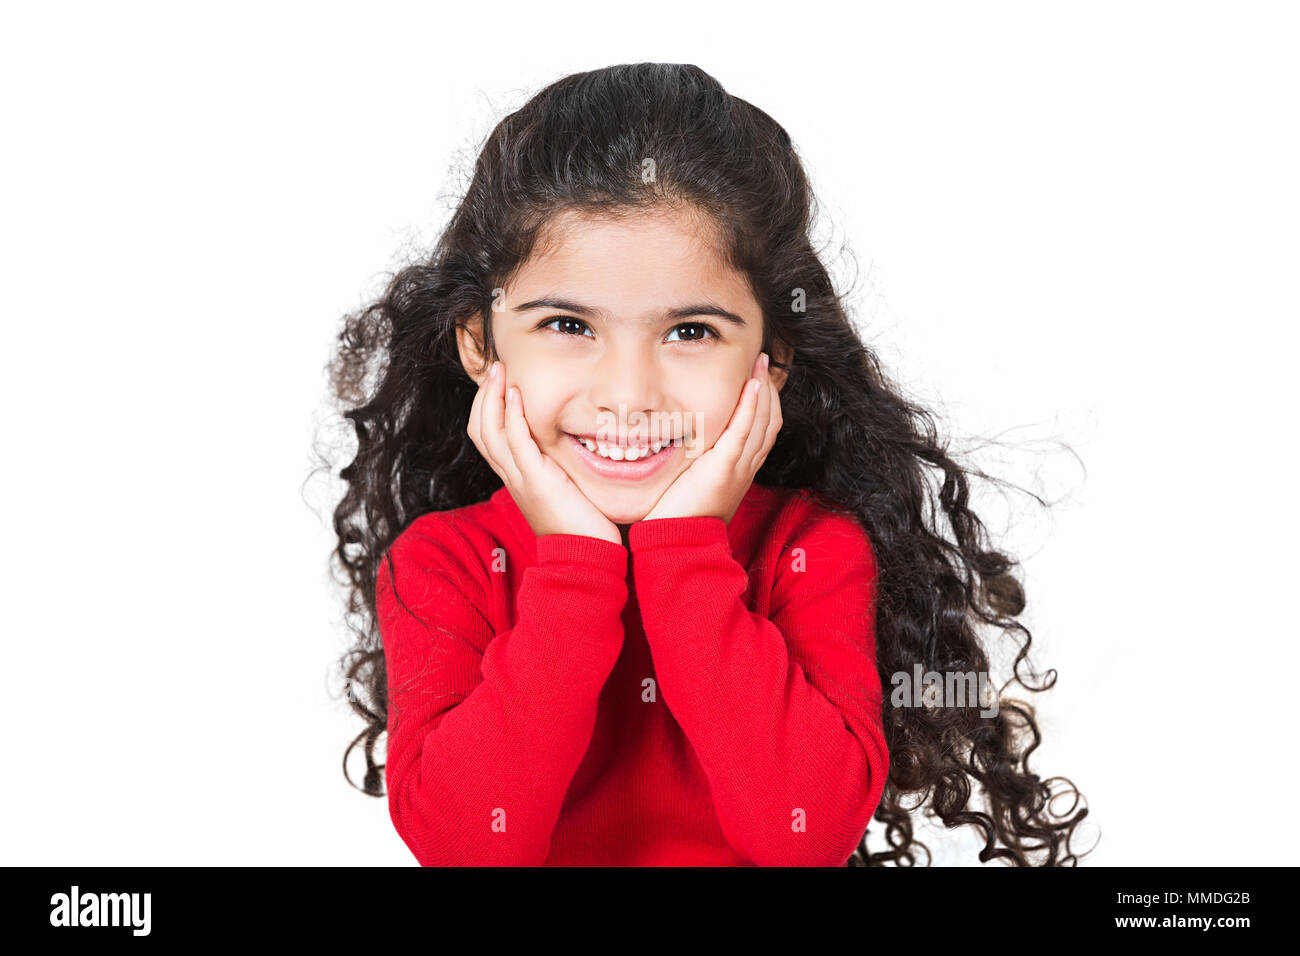 Un niño niña sonriente con la mano en el mentón Looking-Away inclinada disfrutando Foto de stock